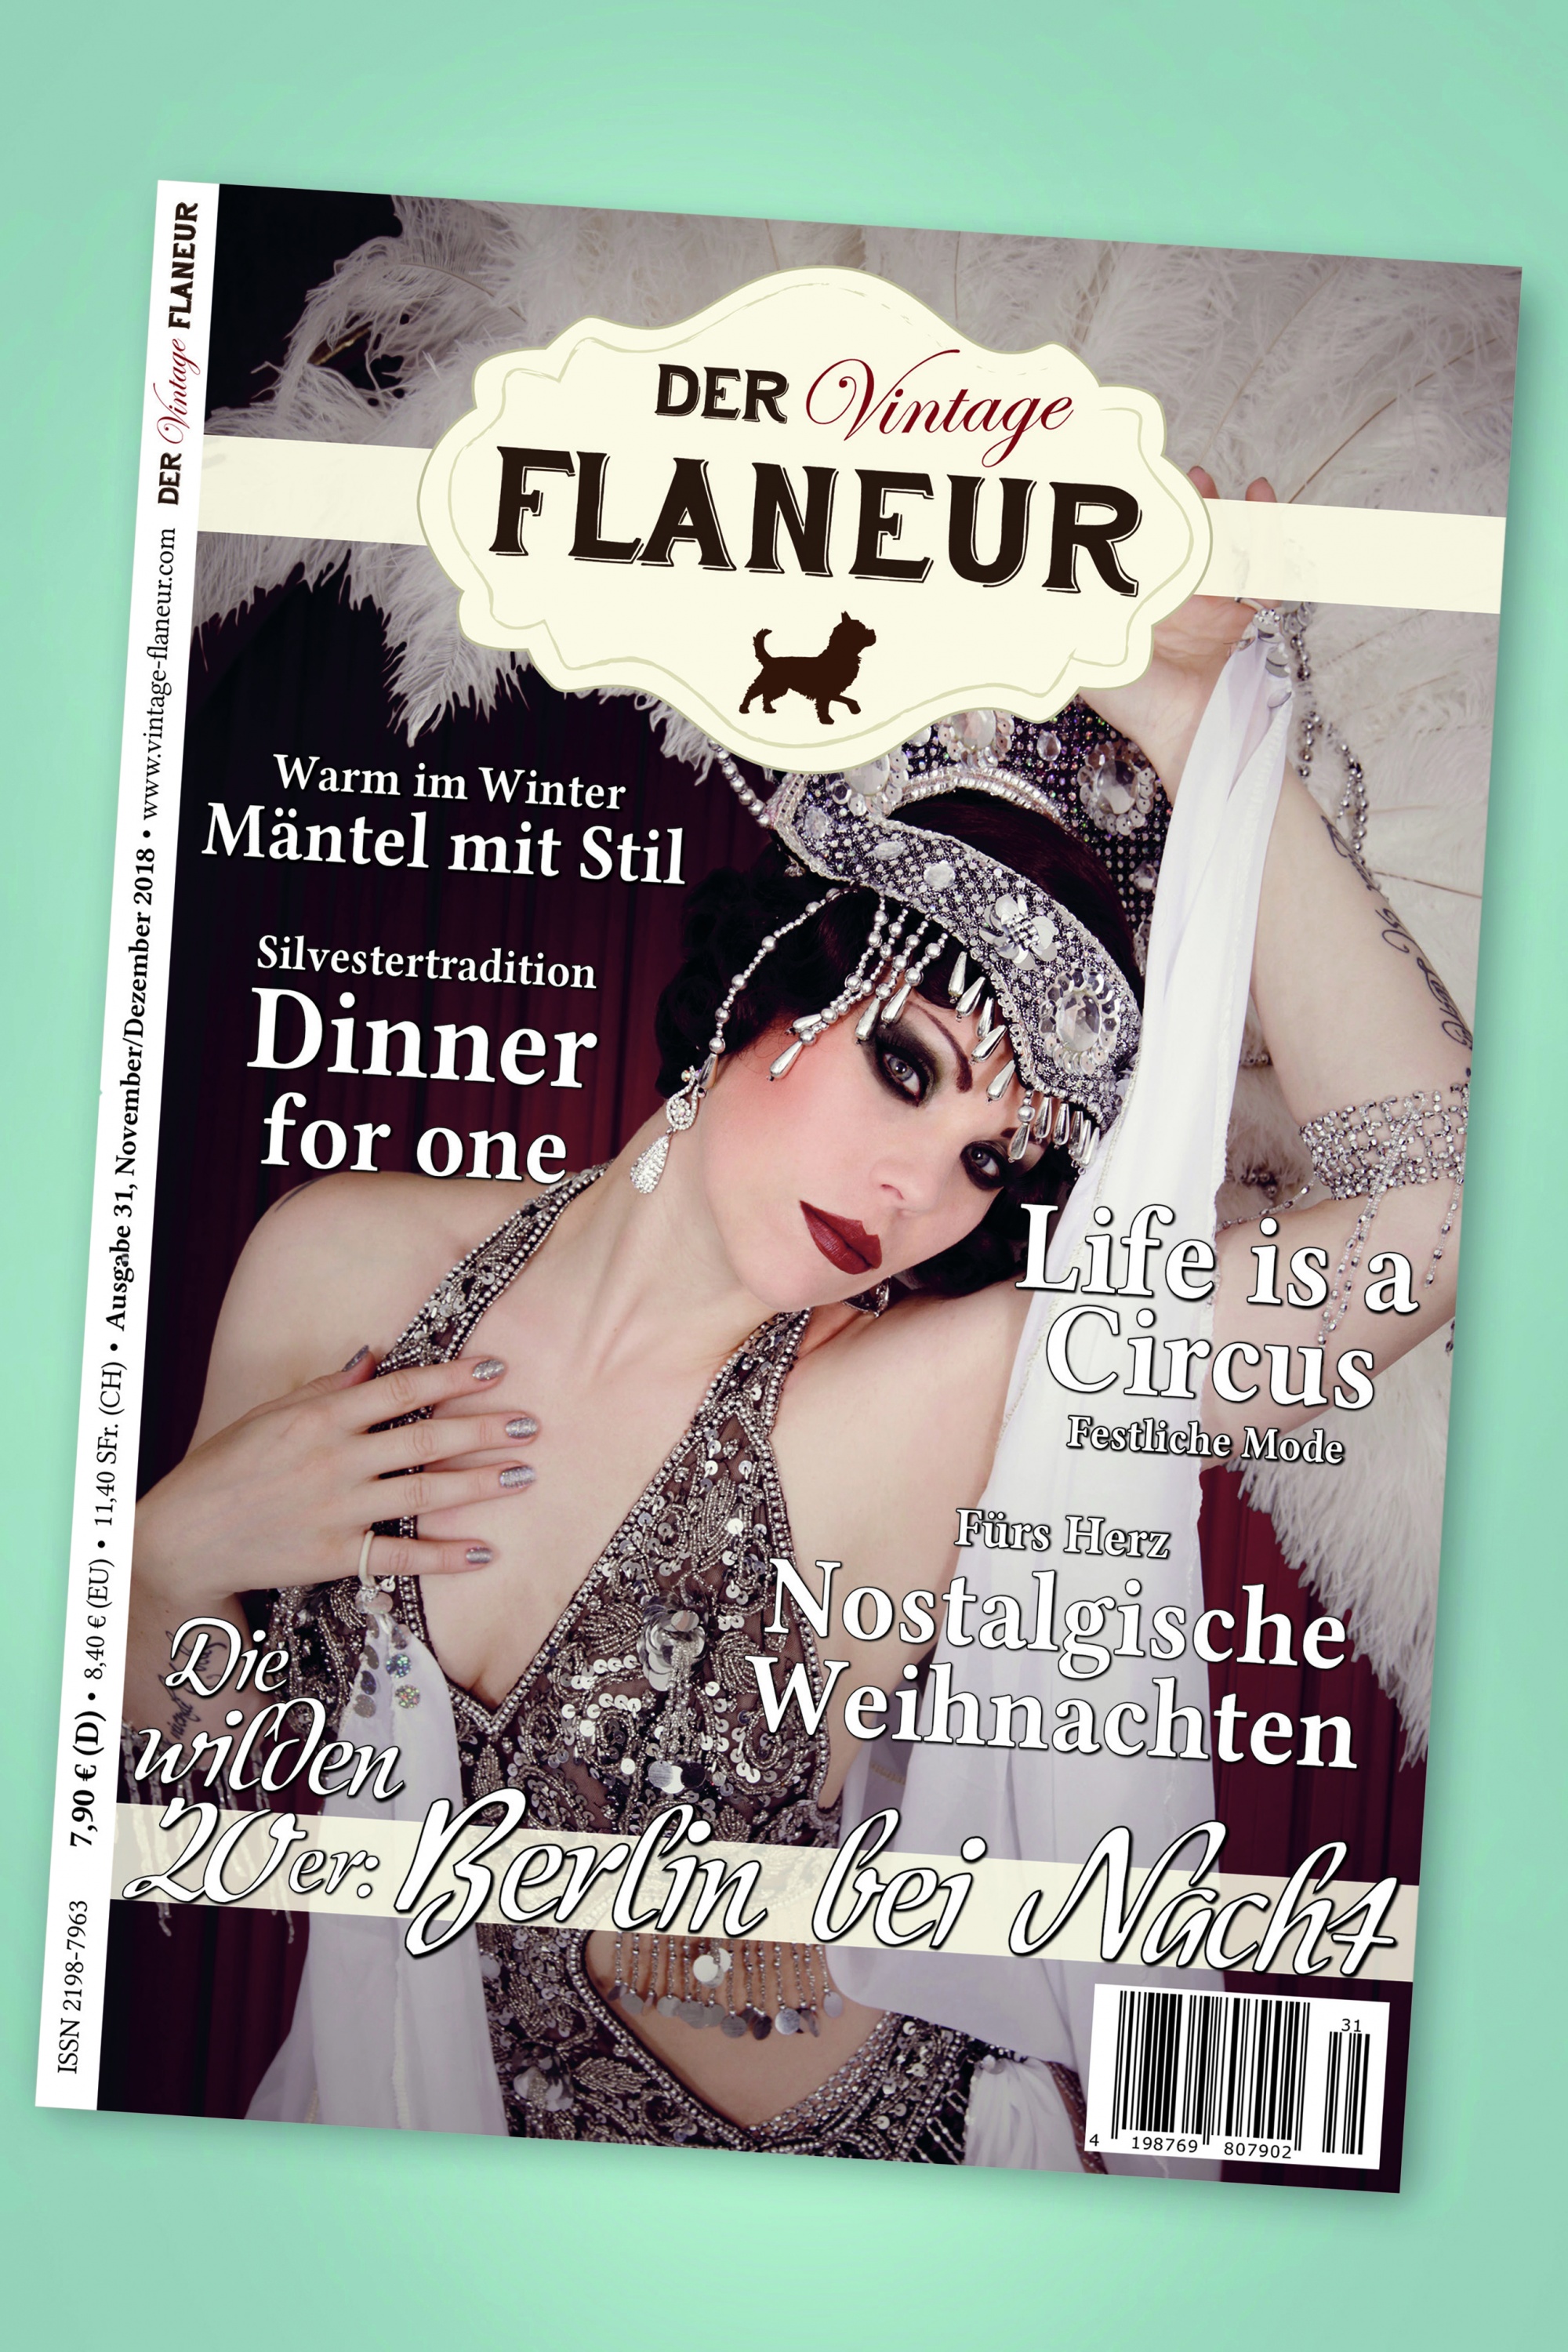 Der Vintage Flaneur - Der Vintage Flaneur Uitgegeven op 31, 2018